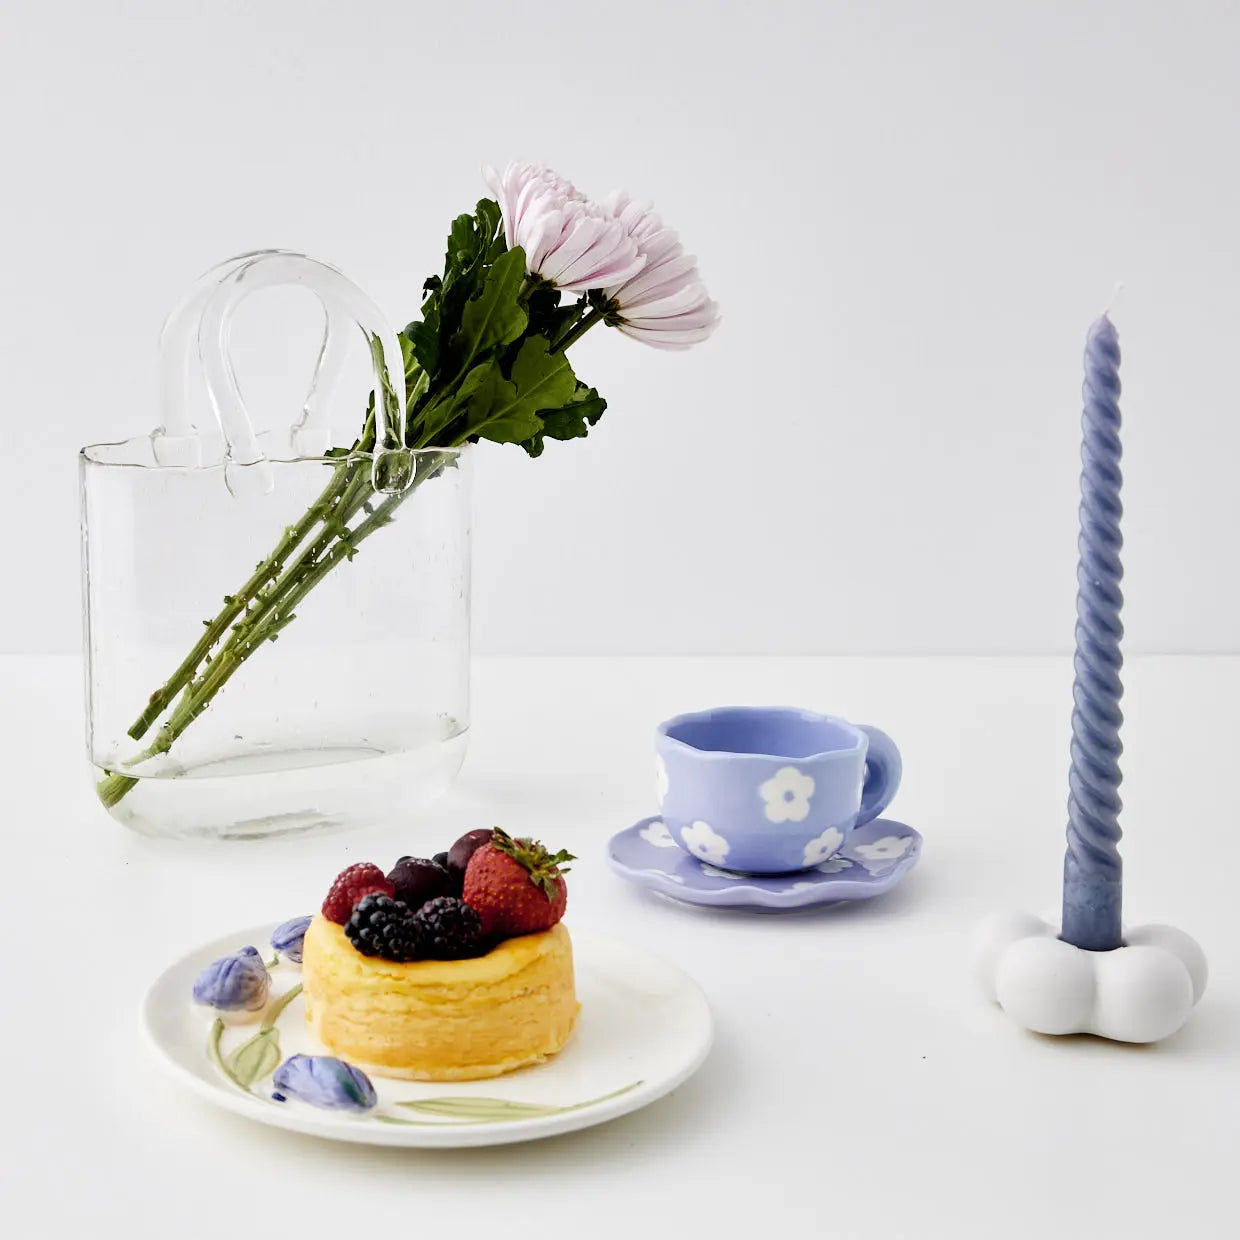 Daisy Ceramic Cup and Saucer Lilac - GigiandTom